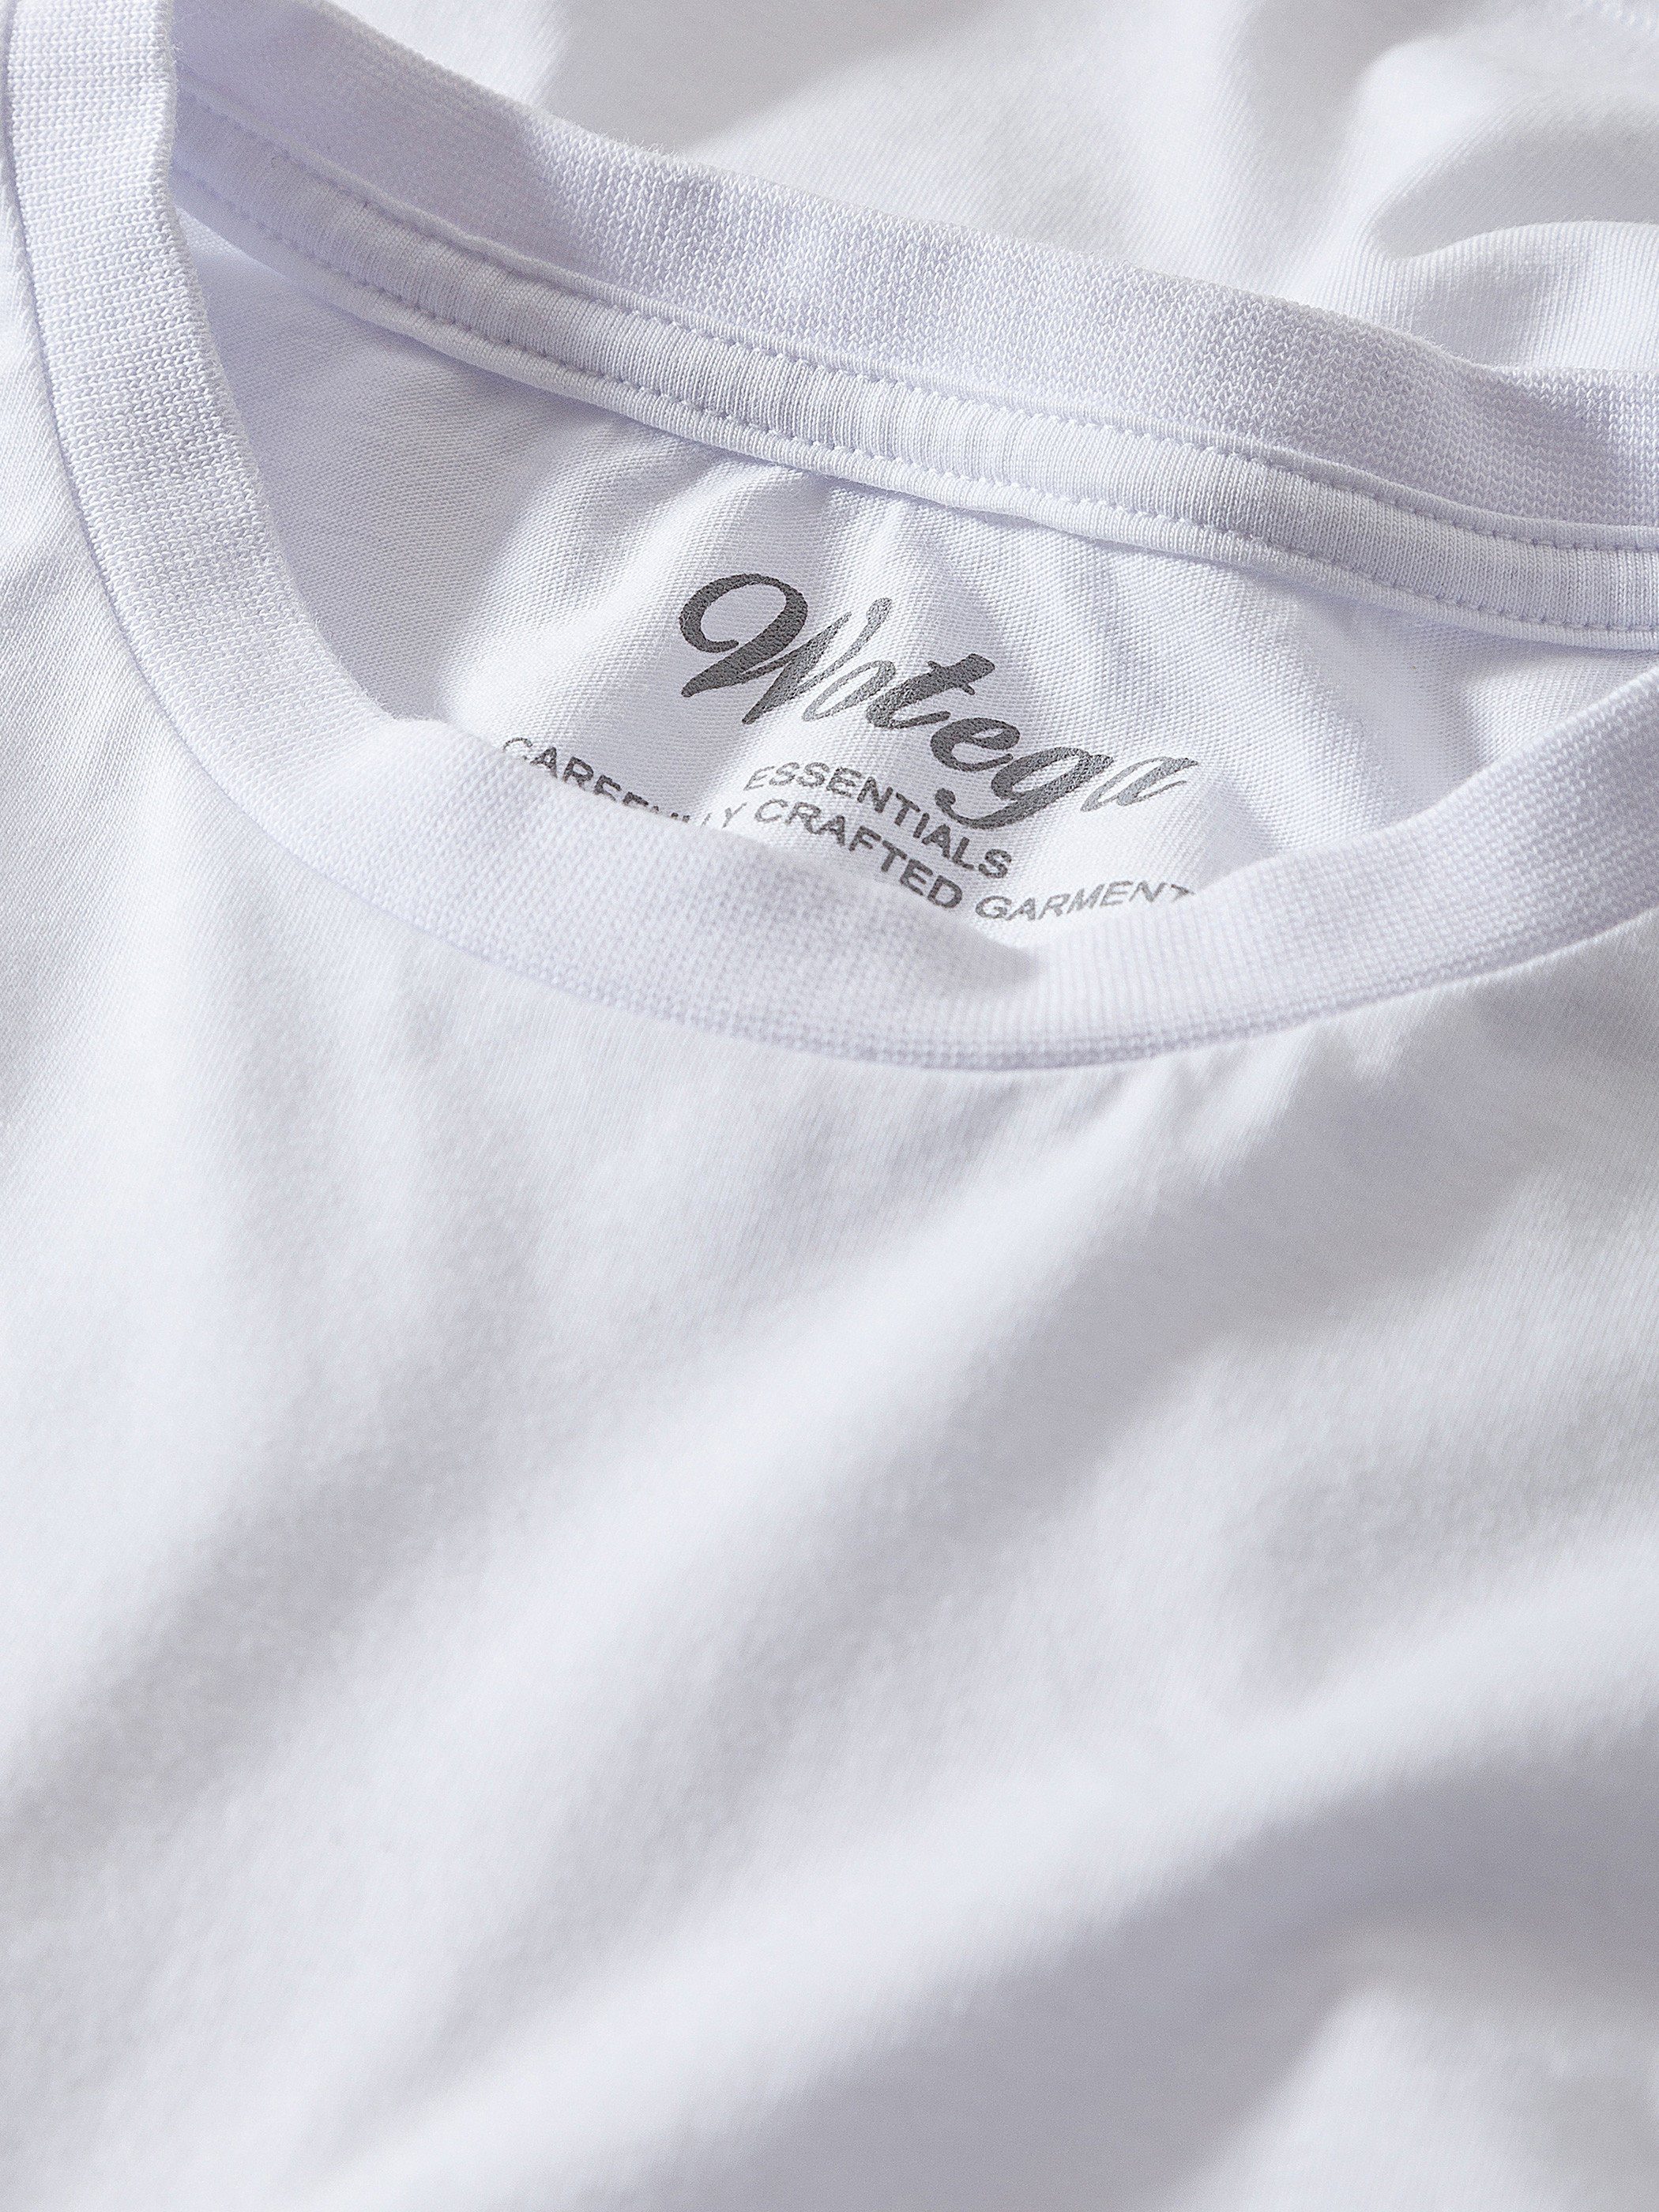 Neck Weiß (Set) 114001) Rundhalsshirt modernes Basic T-Shirt Alton WOTEGA Crew white Tee (brilliant